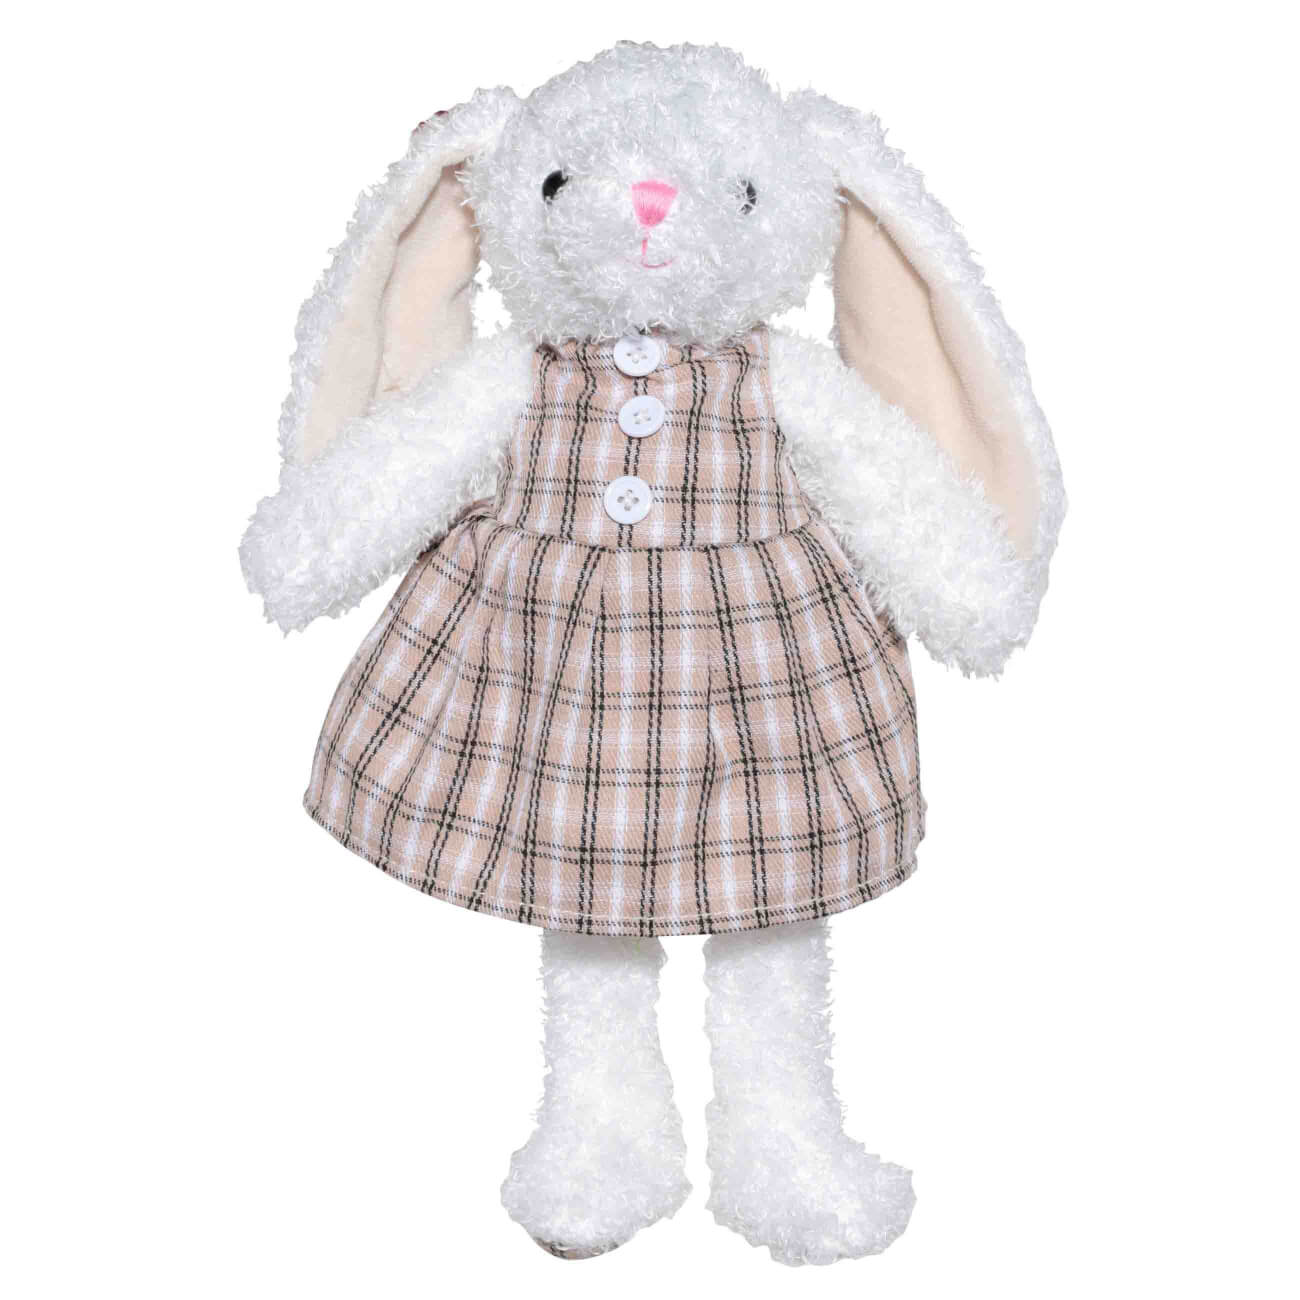 Игрушка, 21 см, мягкая, полиэстер, бежевая, Крольчиха в платье, Rabbit игрушка 35 см мягкая хлопок бежевая зайка в юбке rabbit